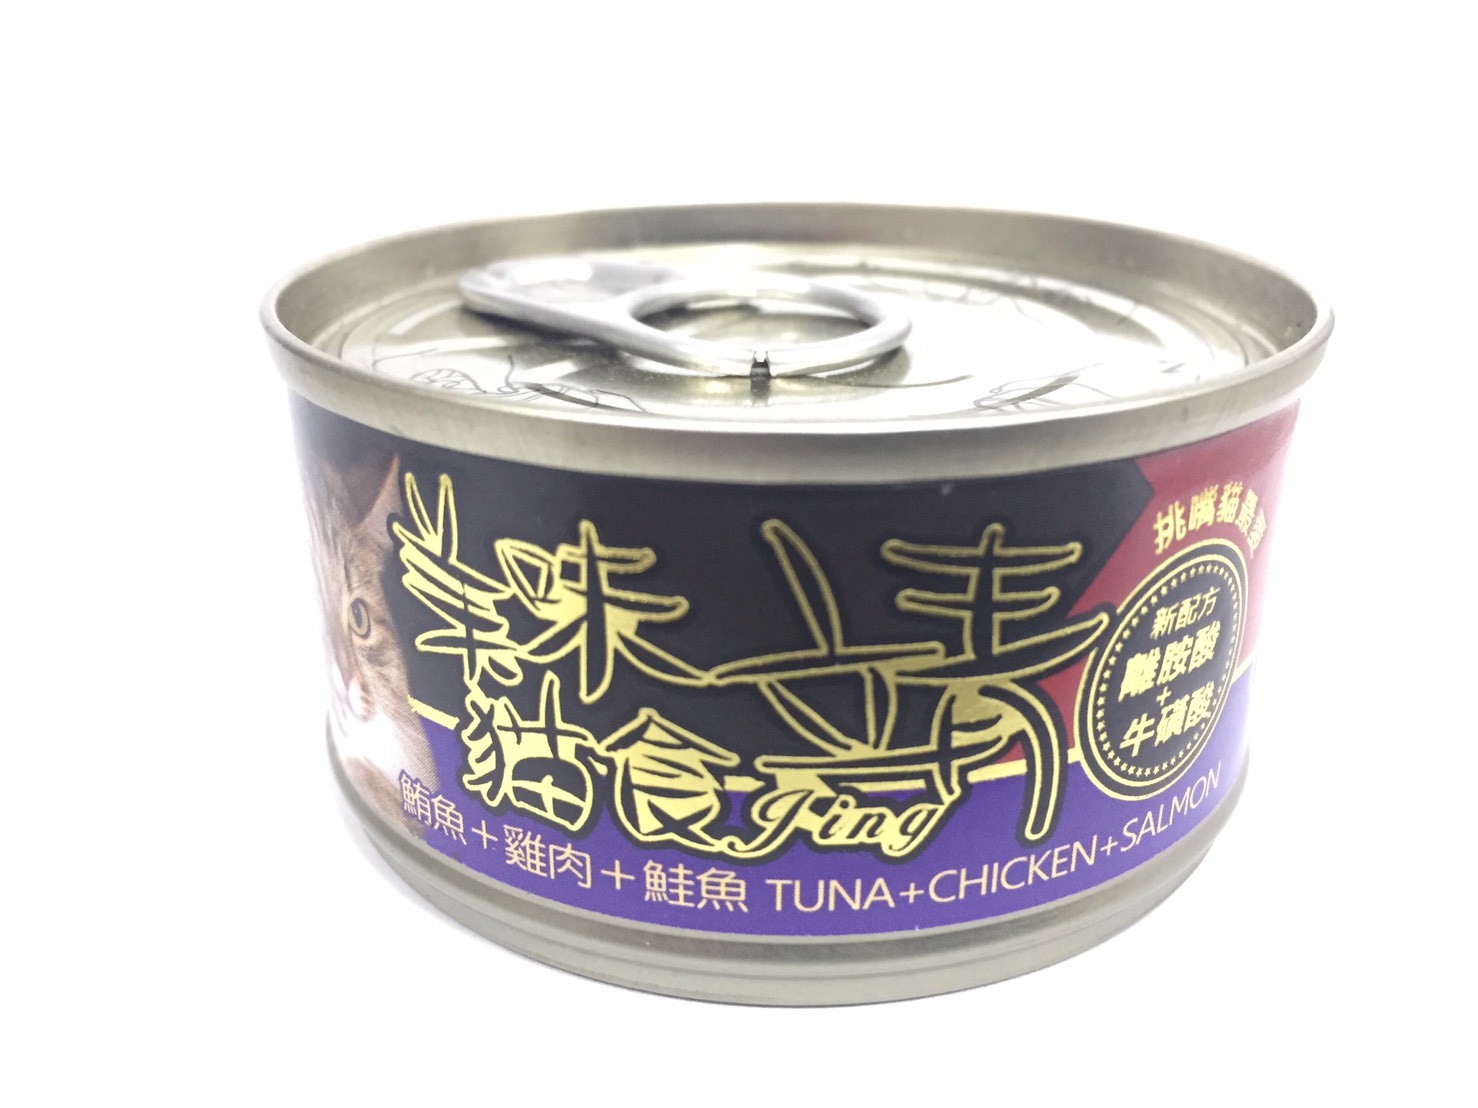 靖特級貓罐-鮪魚+雞肉+鮭魚
Jing cat can-tuna+chicken+salmon